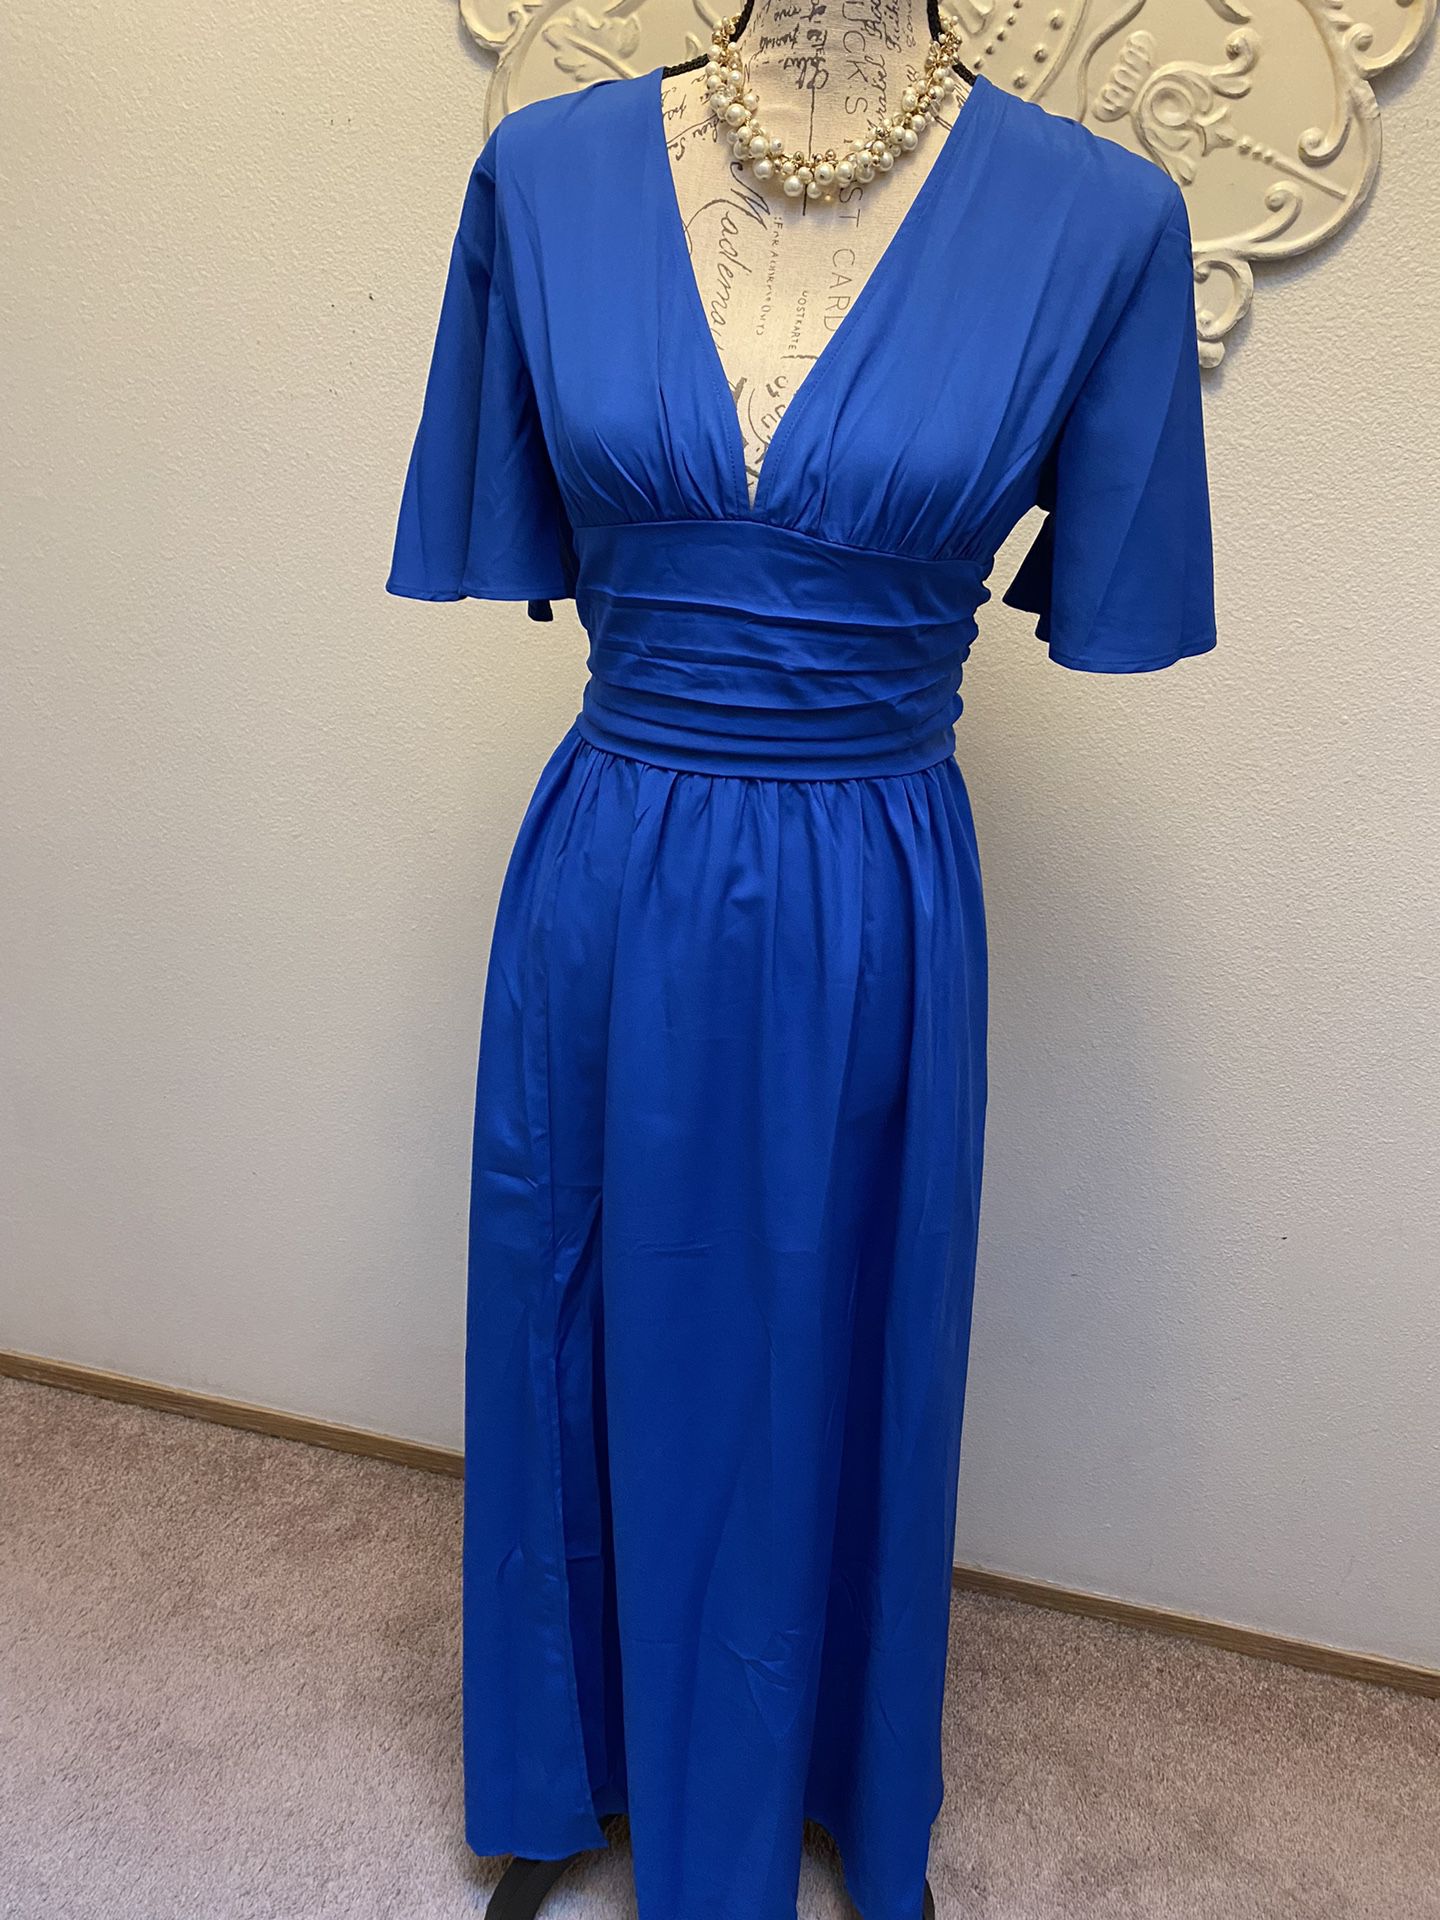 Beautiful Royal Blue Dress Size M